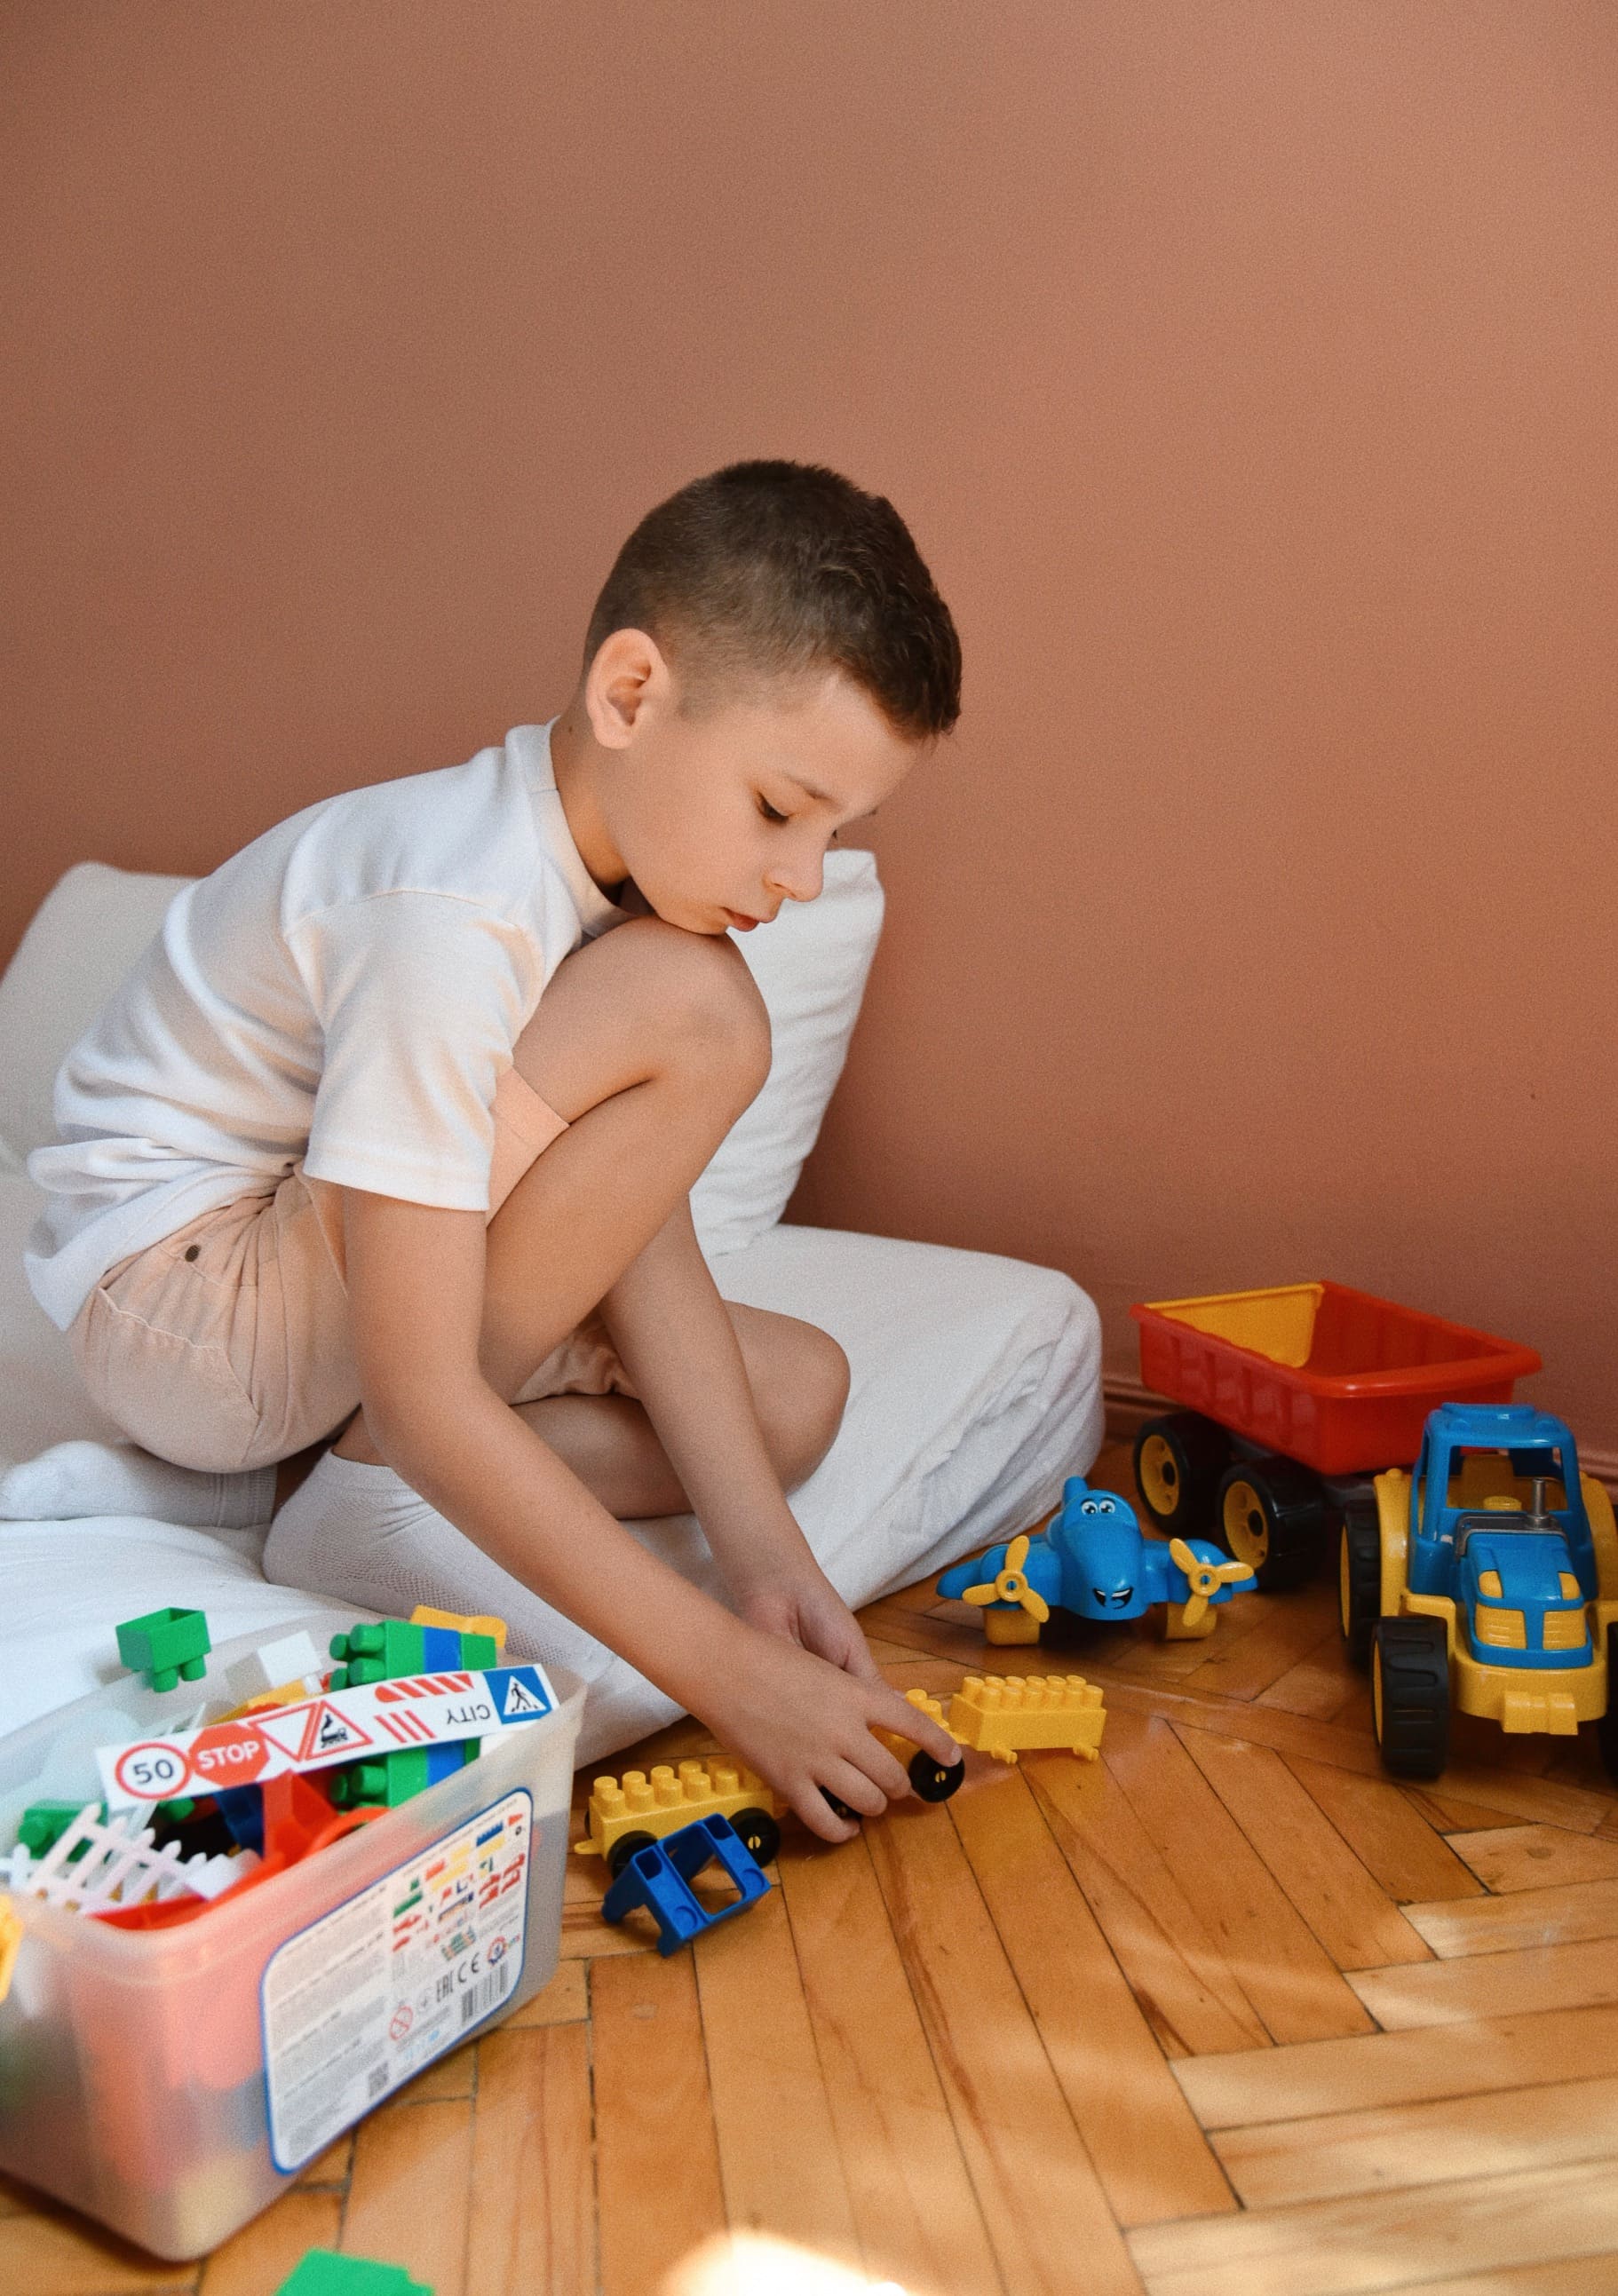 Strateg-Spielzeuge lenken das Kind während eines Luftalarms ab – Oleksandr Sivak